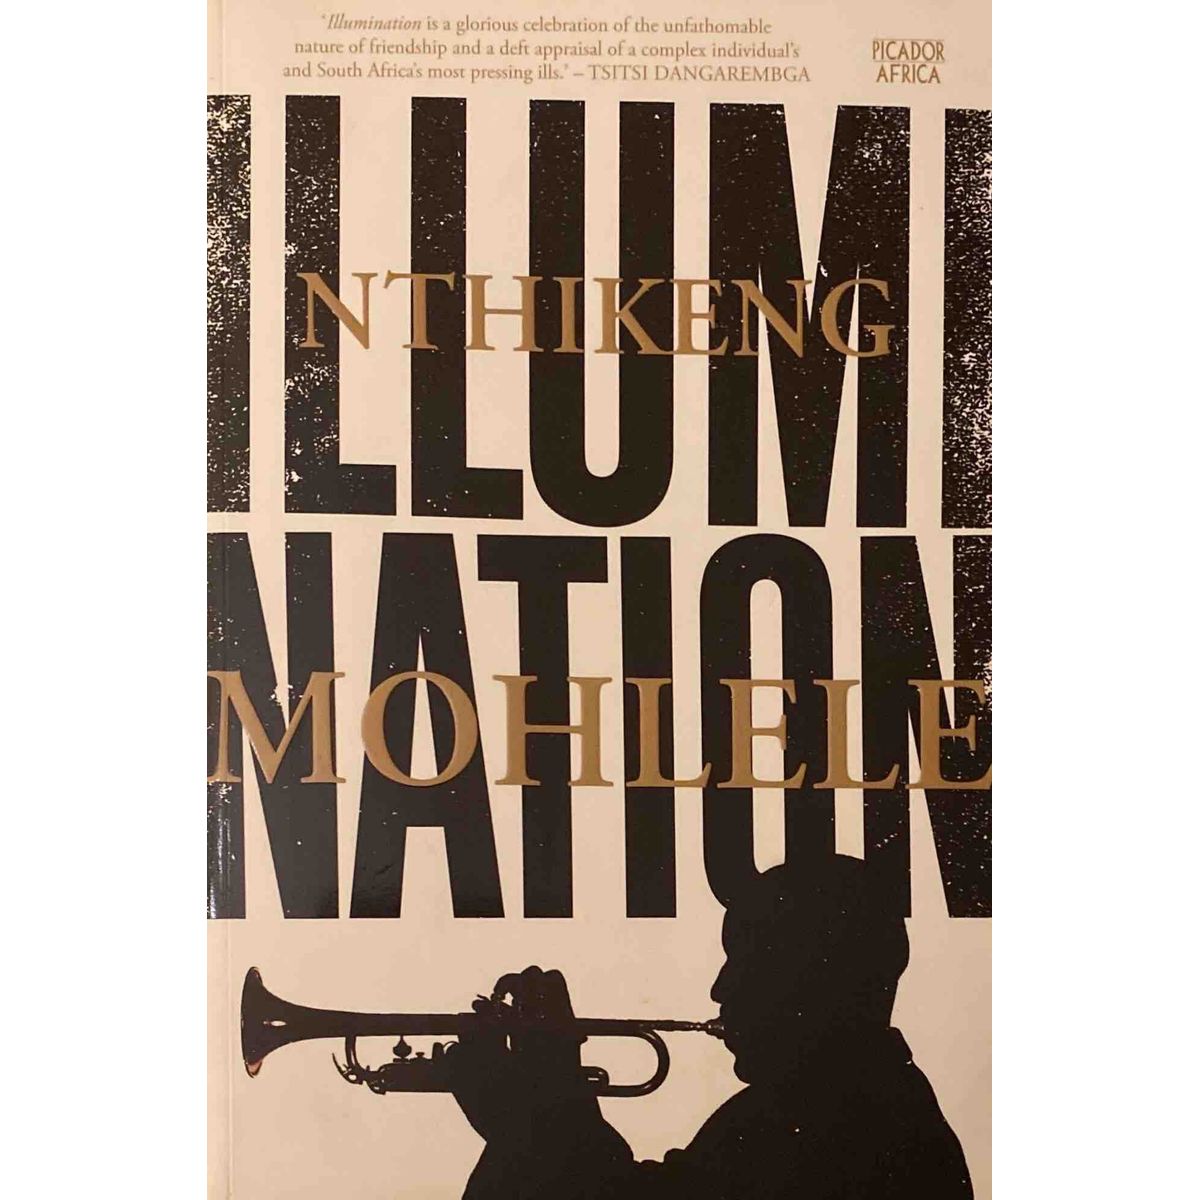 ISBN: 9781770106253 / 1770106251 - Illumination by Nthikeng Mohlele [2019]